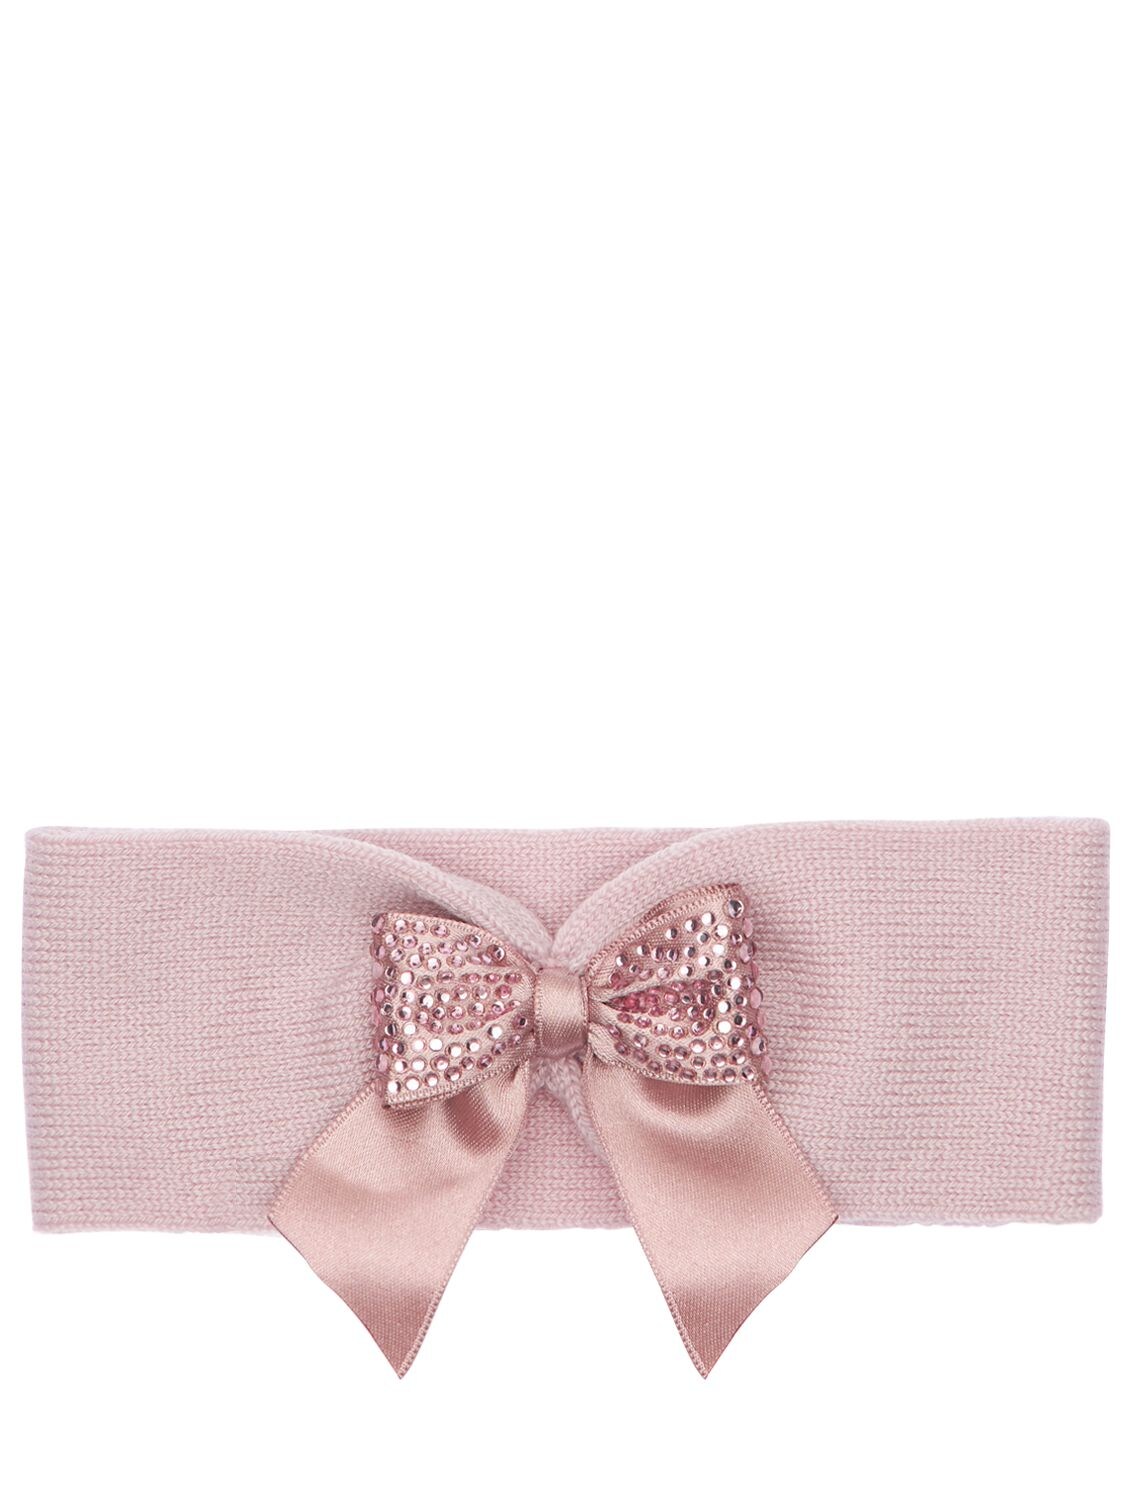 La Perla Kids' Interlock Wool Headband W/ Bow Appliqué In Pink